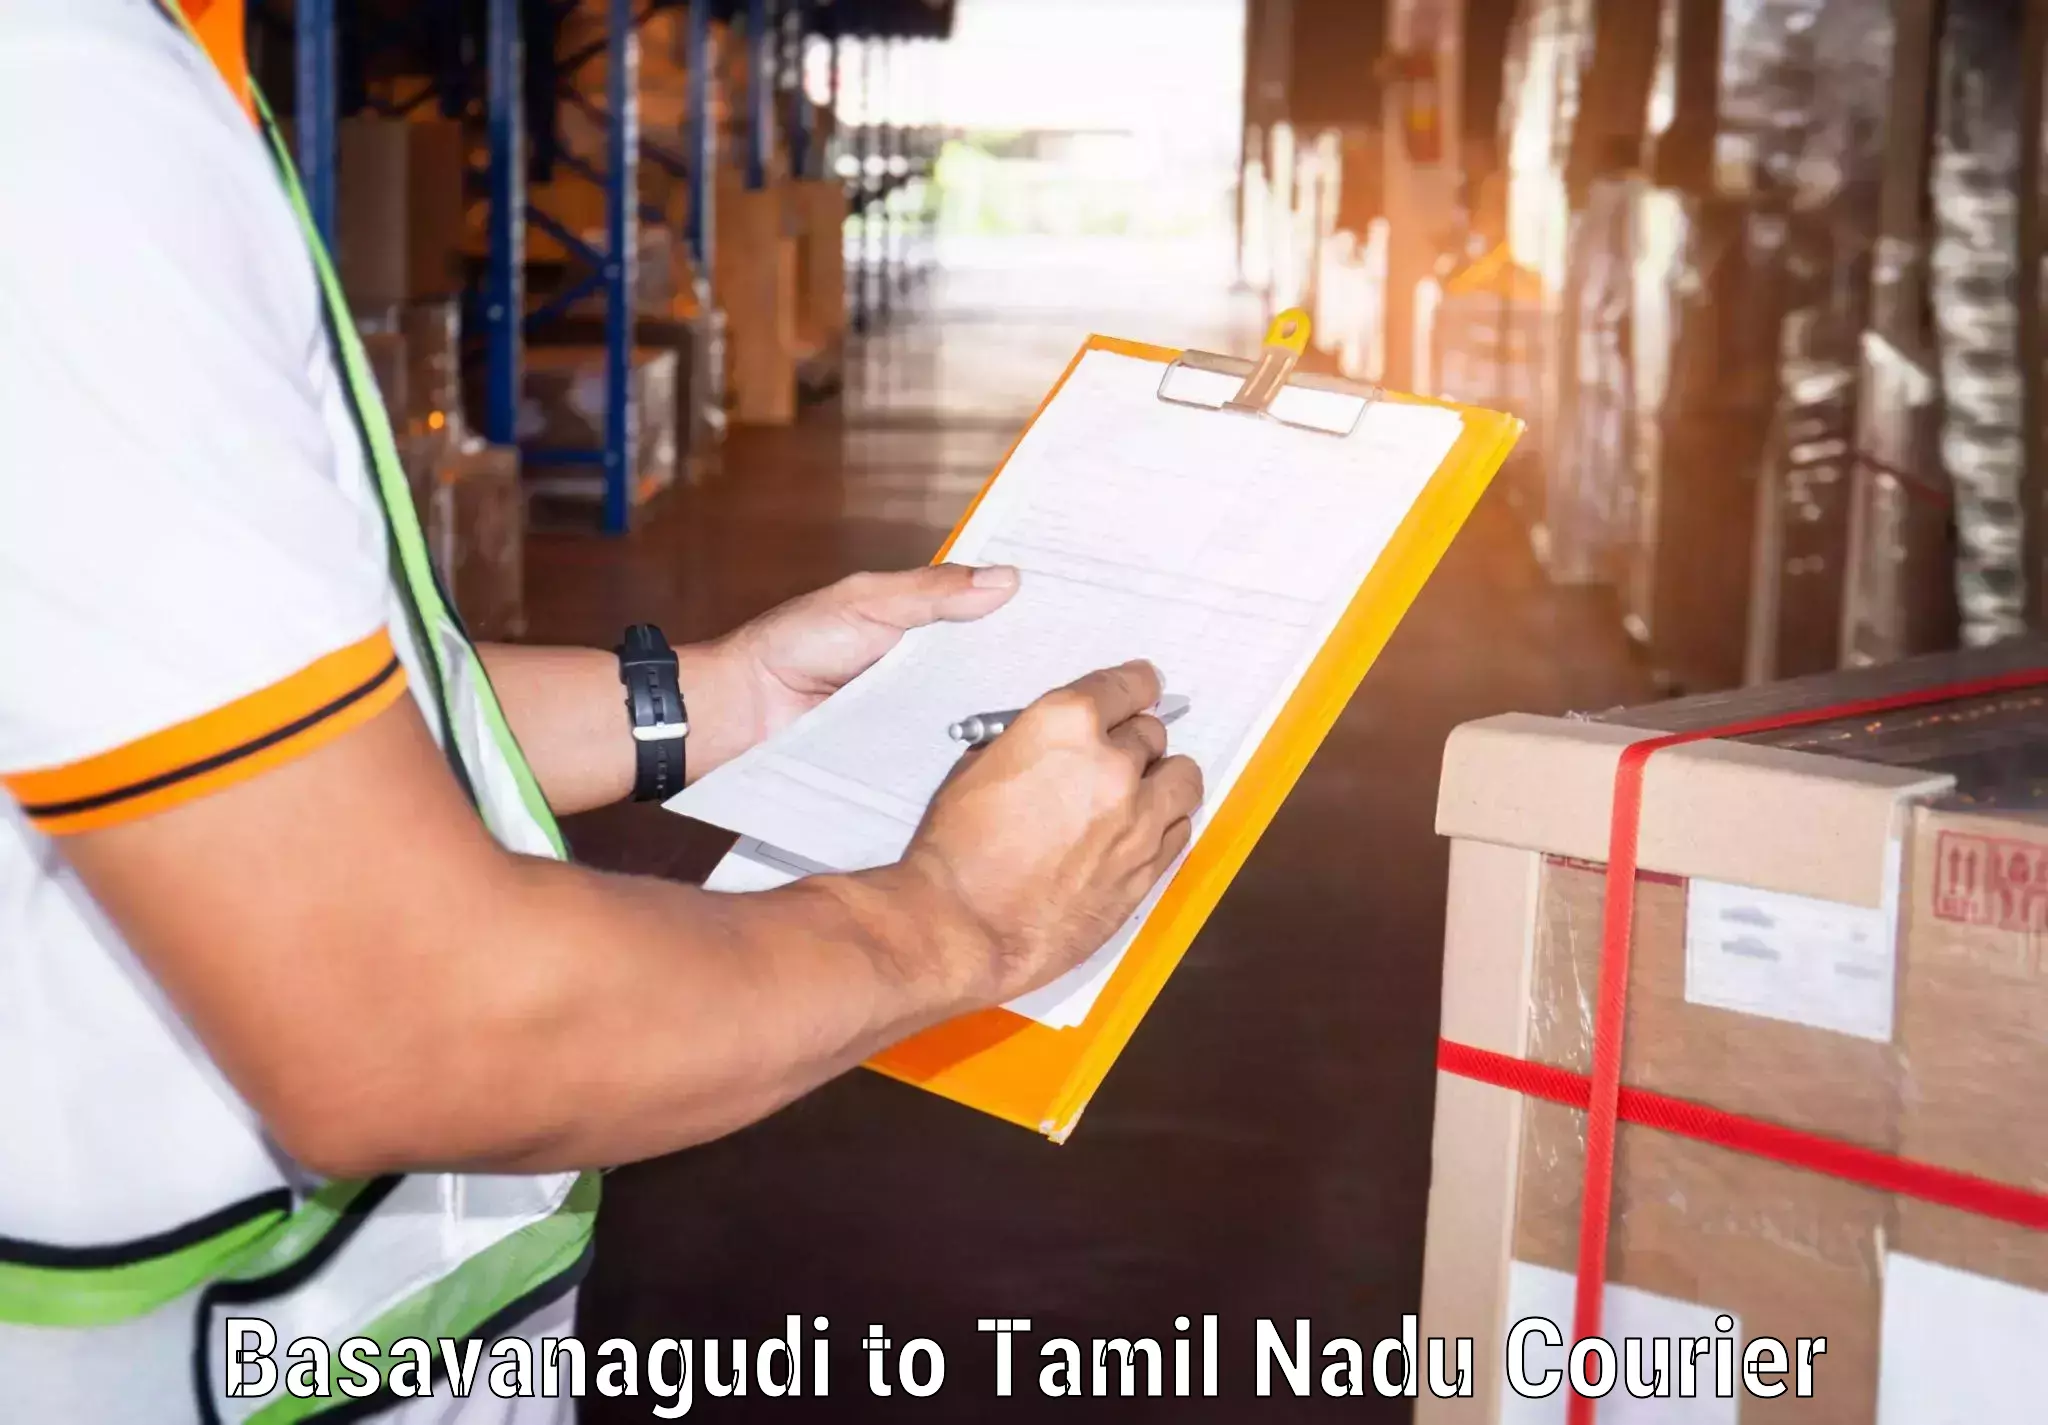 Express delivery network Basavanagudi to IIIT Tiruchirappalli